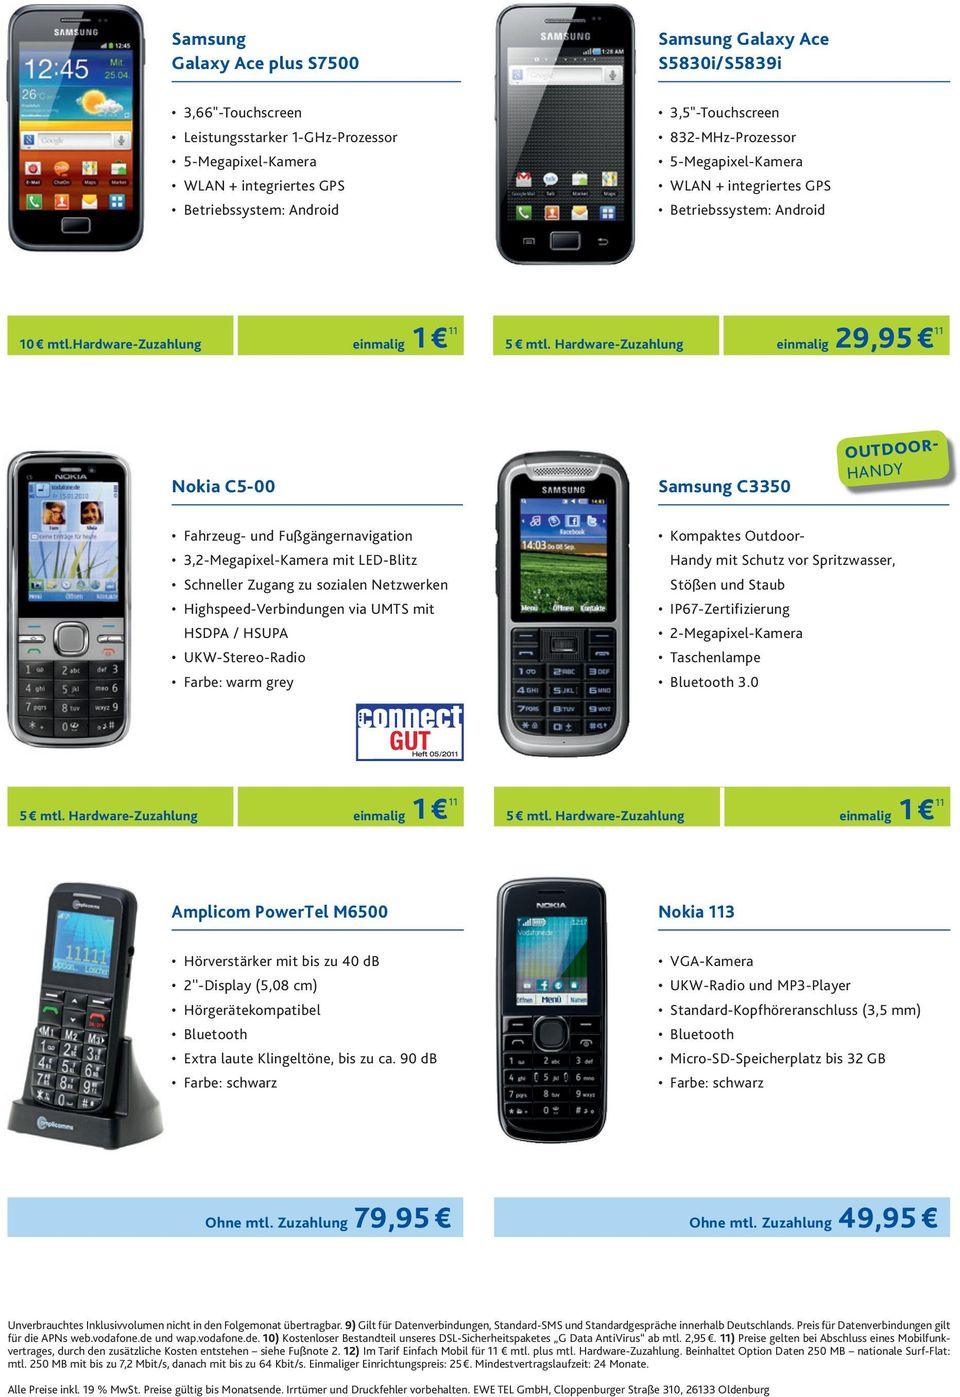 Hardware-Zuzahlung einmalig 29,95 11 Nokia C5-00 Samsung C3350 Kompaktes Outdoor- Handy mit Schutz vor Spritzwasser, Stößen und Staub IP67-Zertifizierung 2-Megapixel-Kamera Taschenlampe Bluetooth 3.